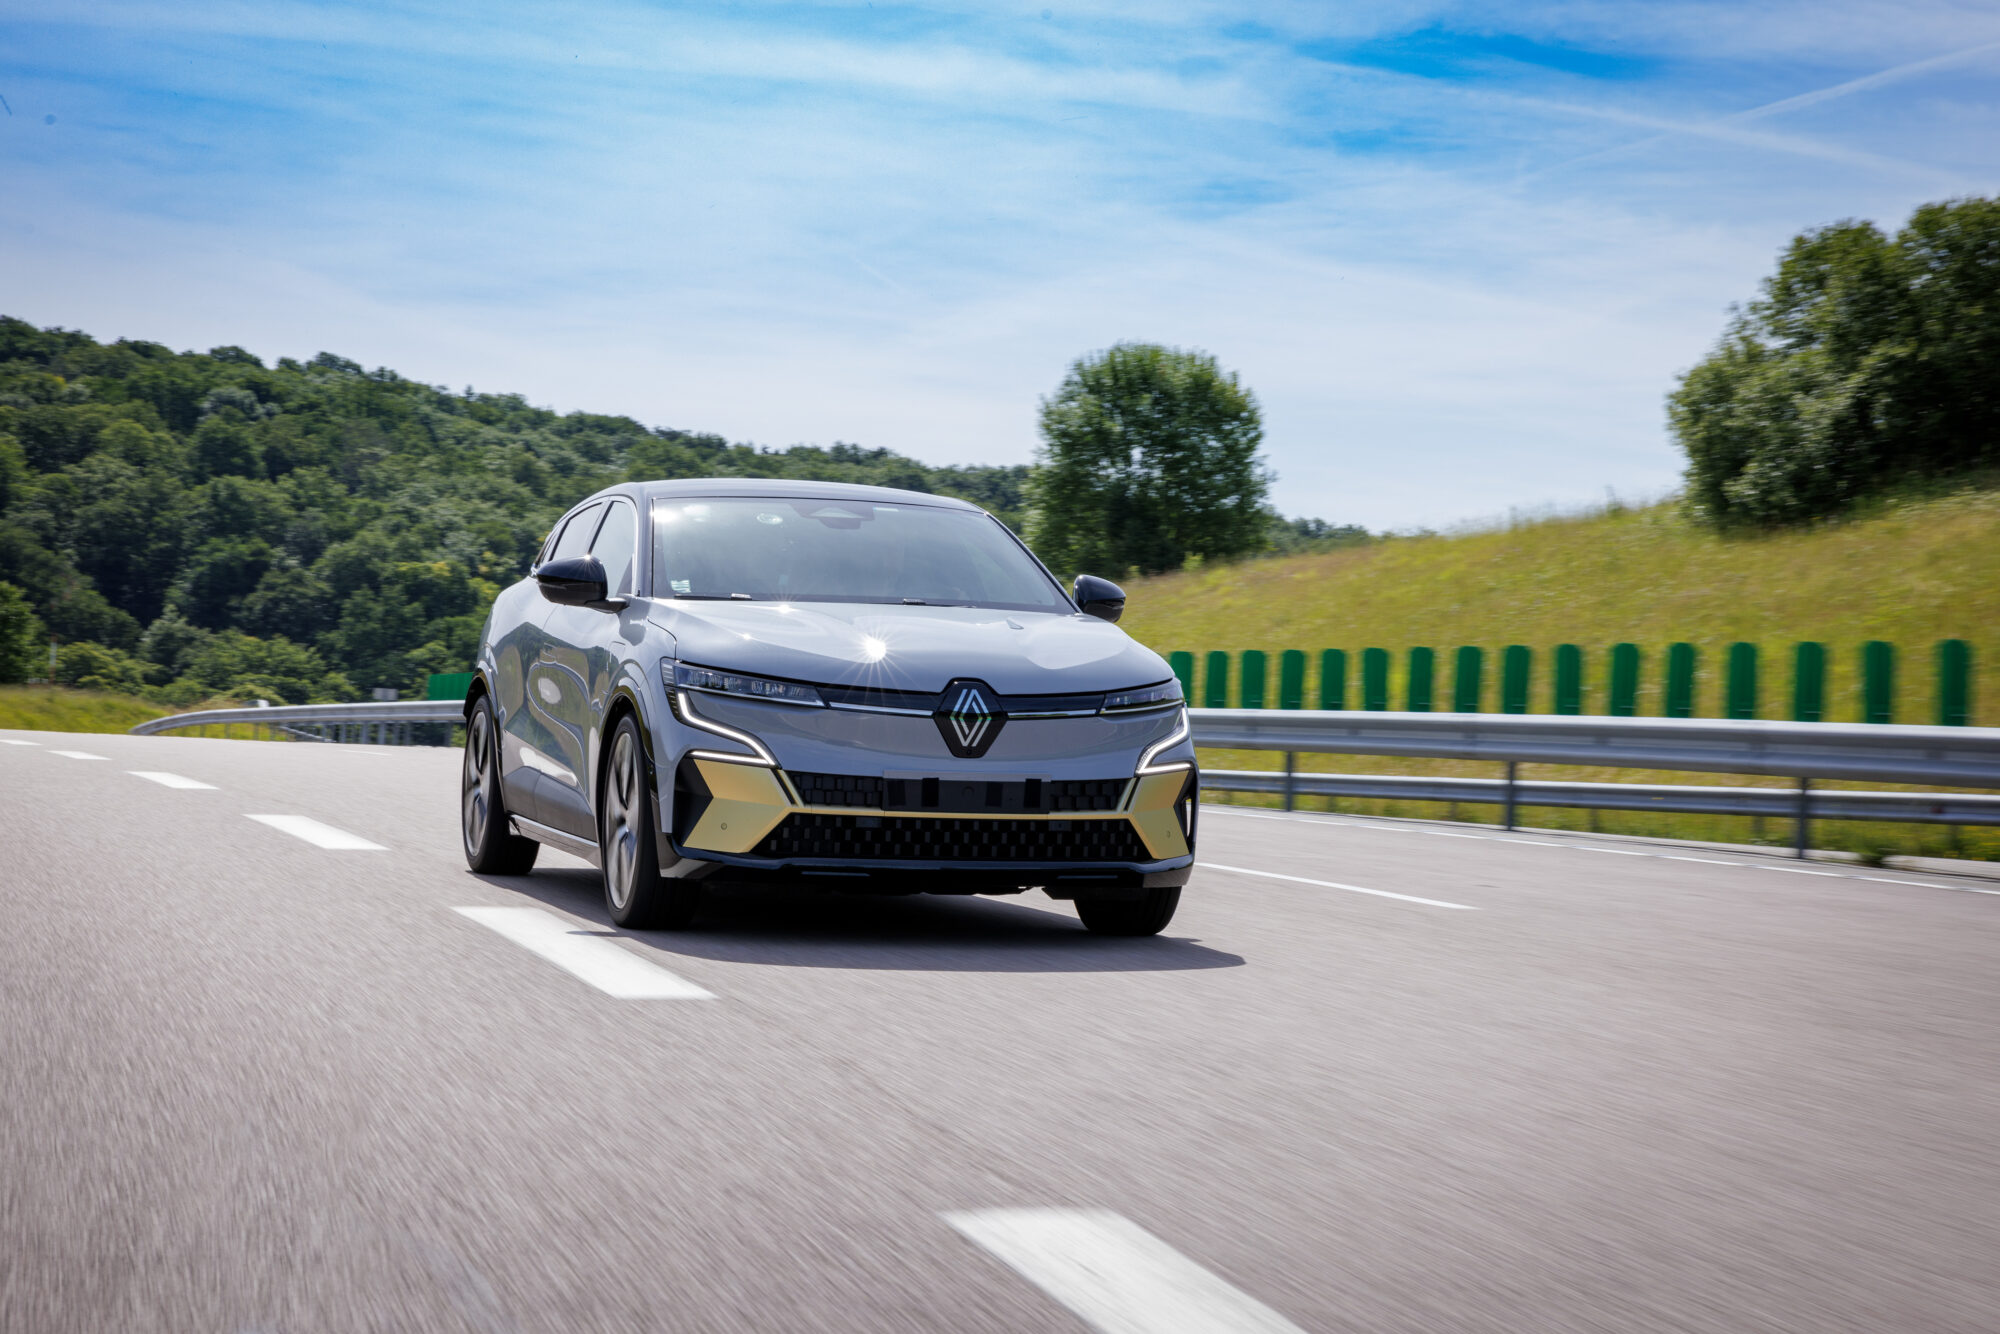 Renault Mégane E-TECH Électrique : plongée au cœur des innovations- Episode 4 : Brevets Motorisation Refroidissement à l'huile